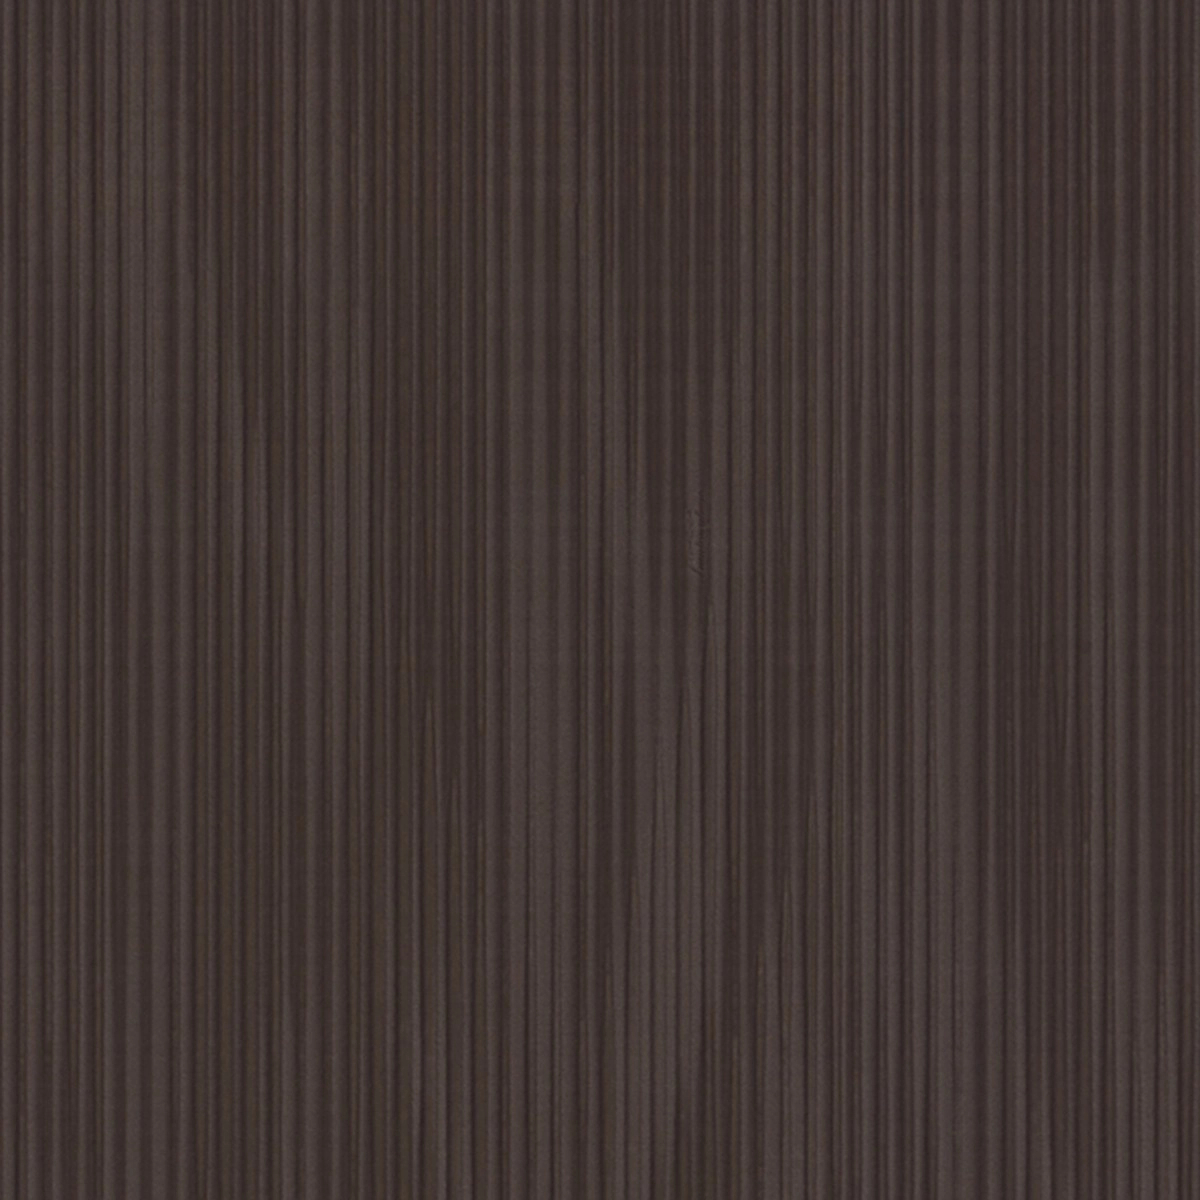 Olasz lamborghini design tapéta barna csíkos mintával 70cm széles